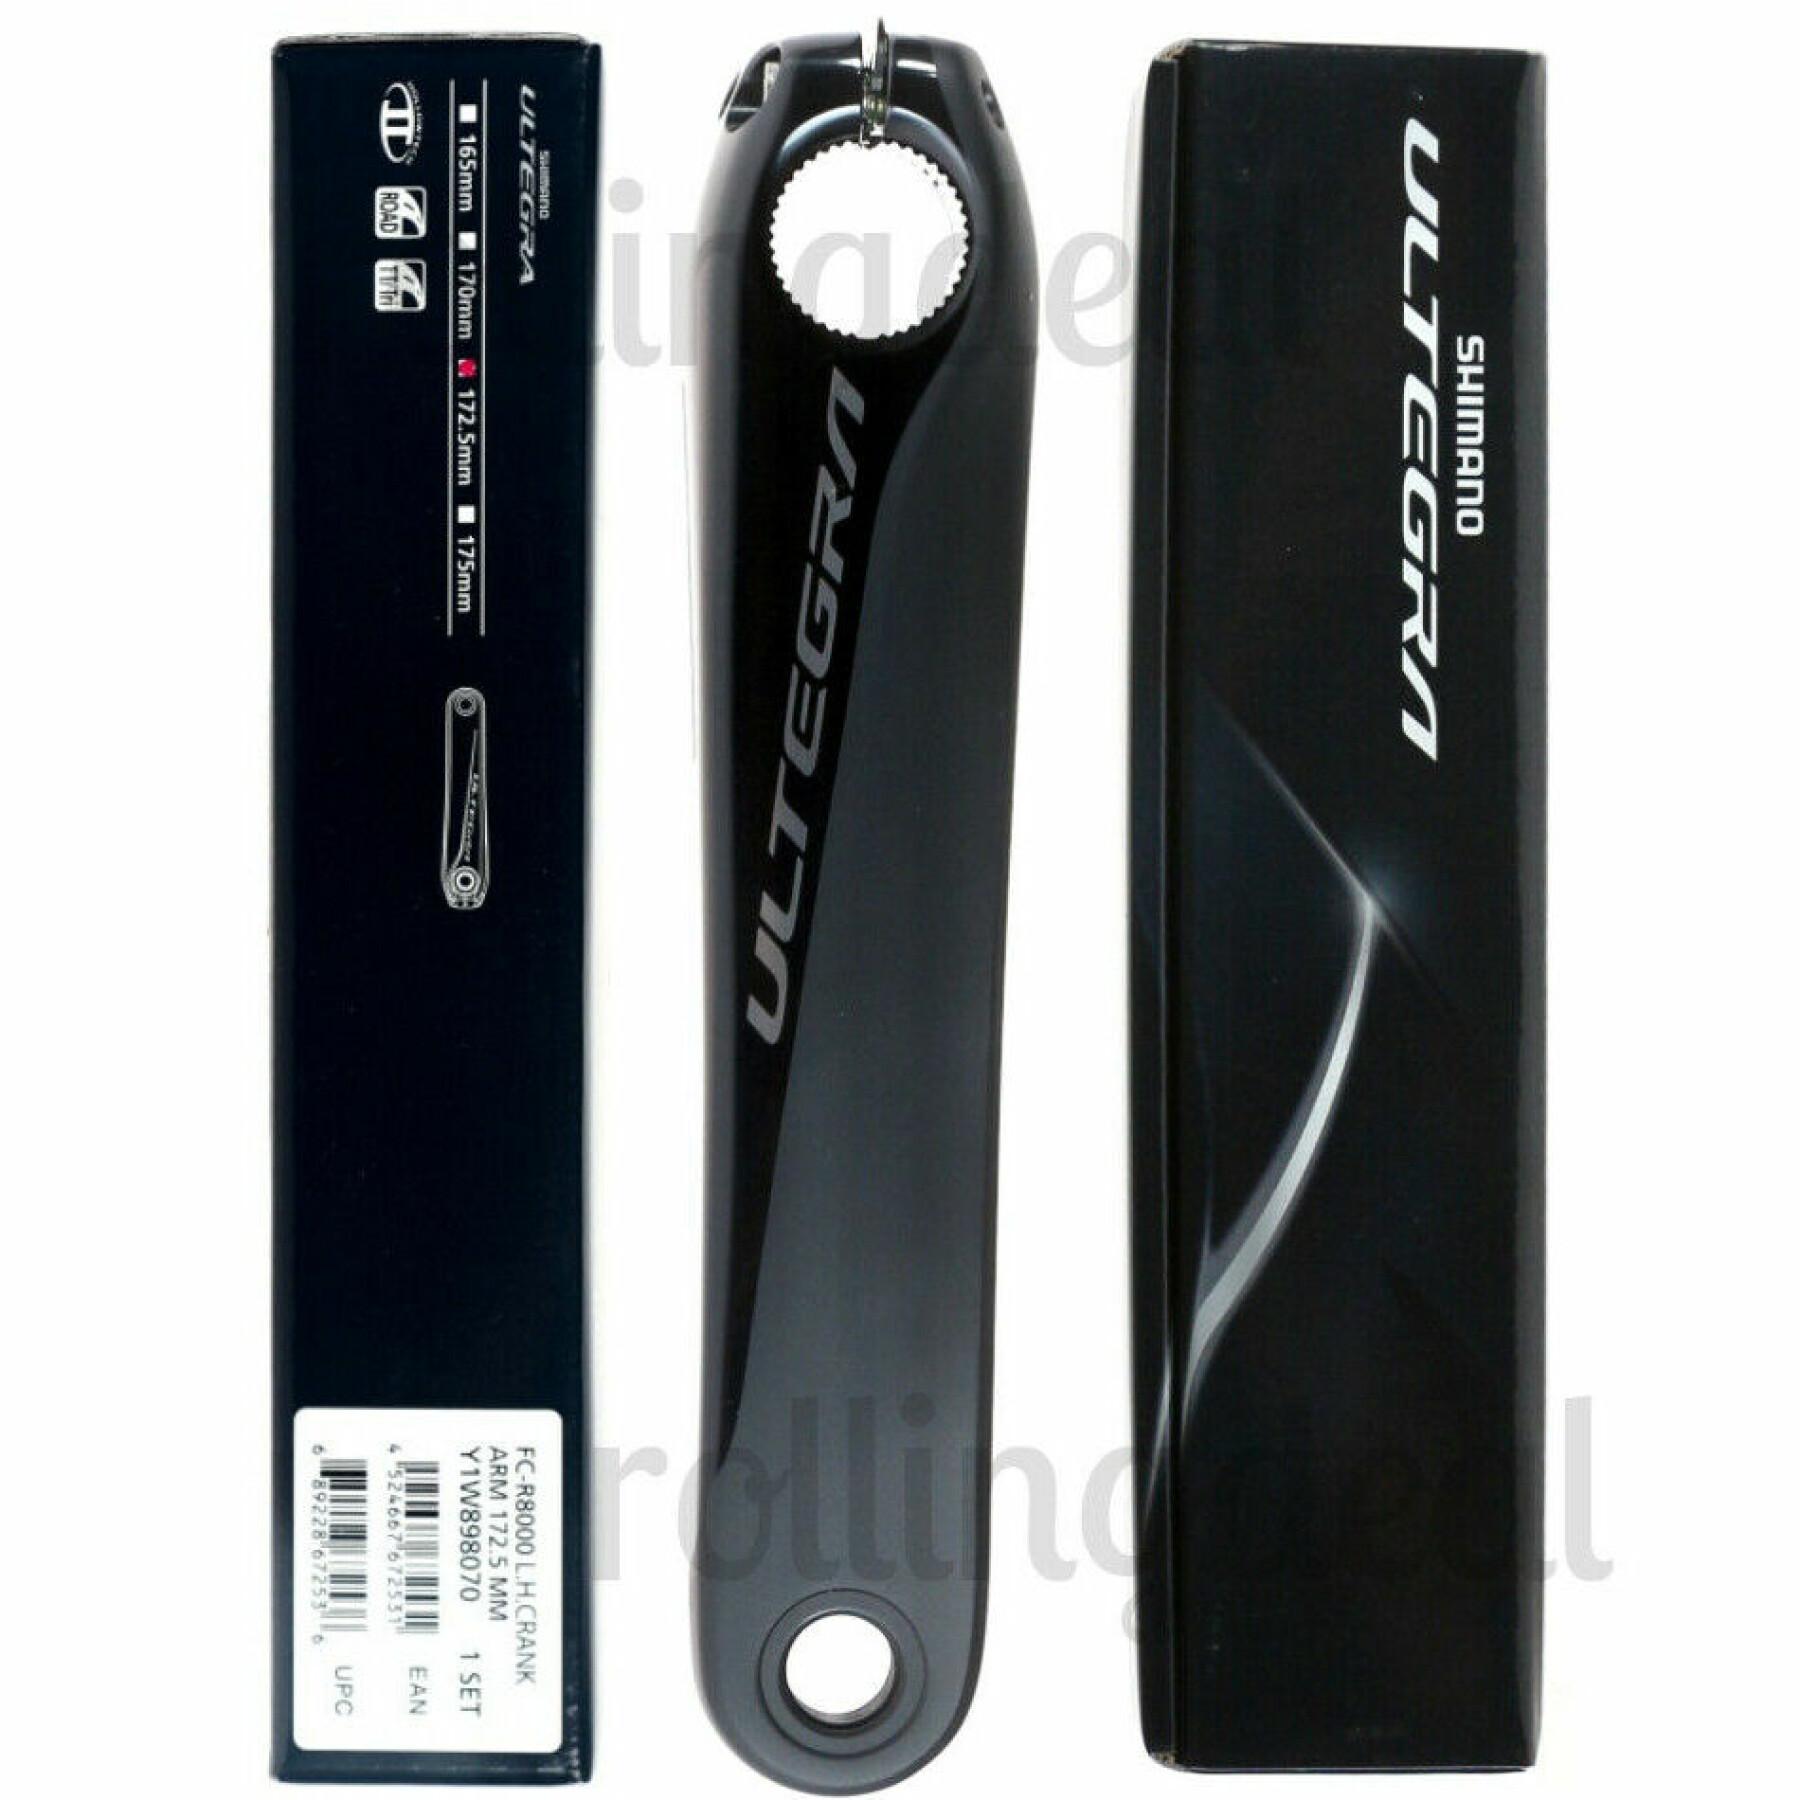 Manovella sinistra Shimano FC-R8000